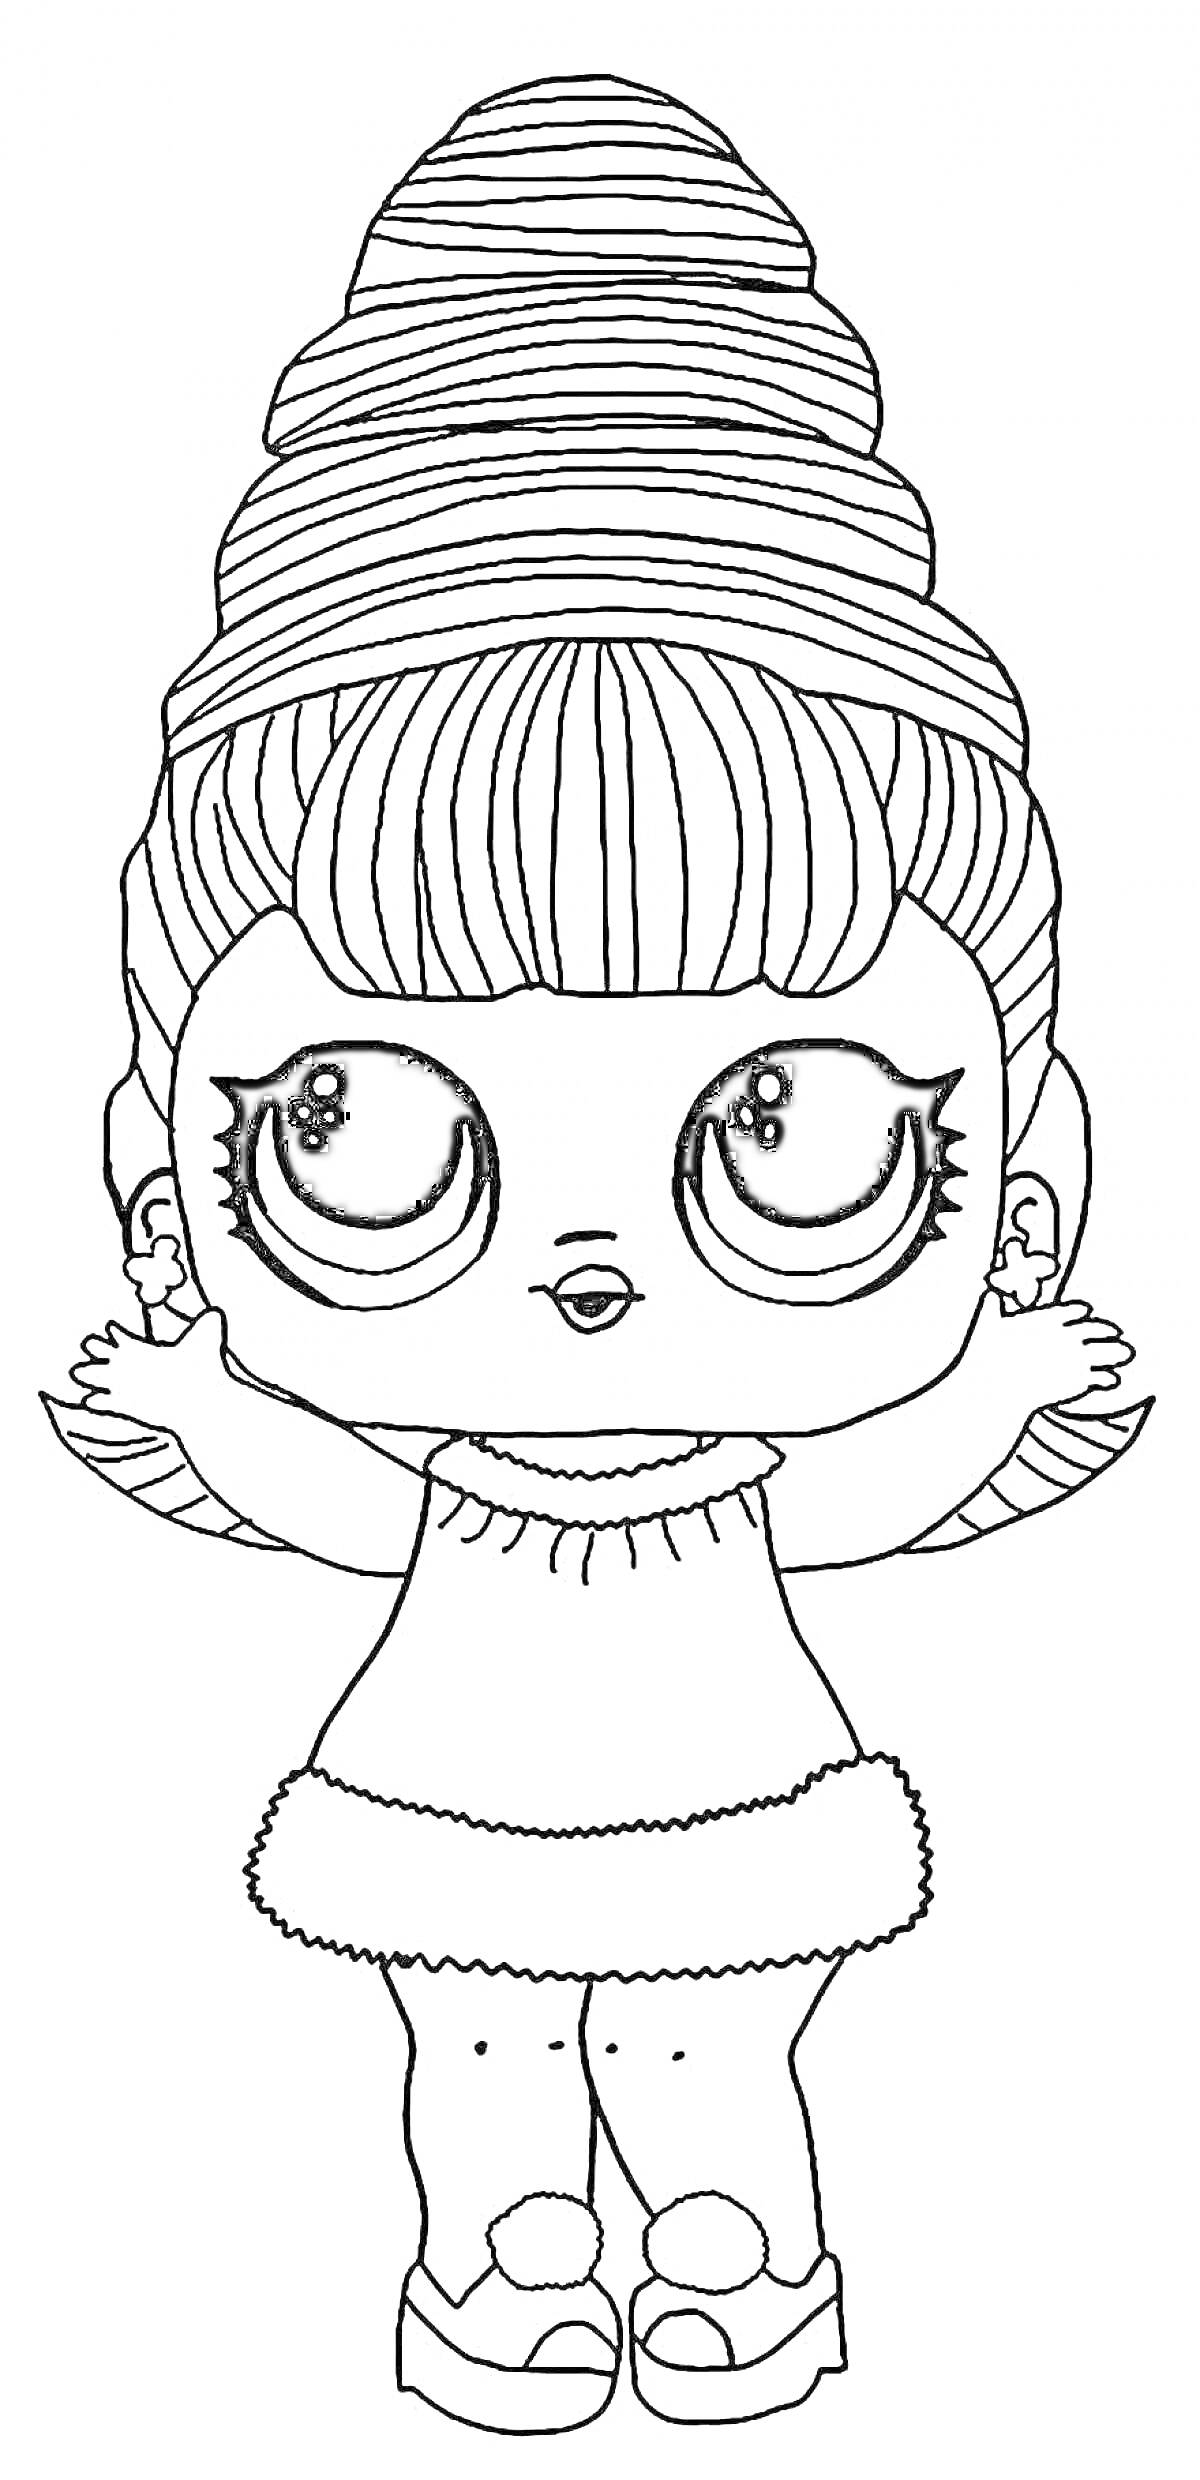 Раскраска Кукла ЛОЛ с высокой прической и зимним нарядом, руки в стороны